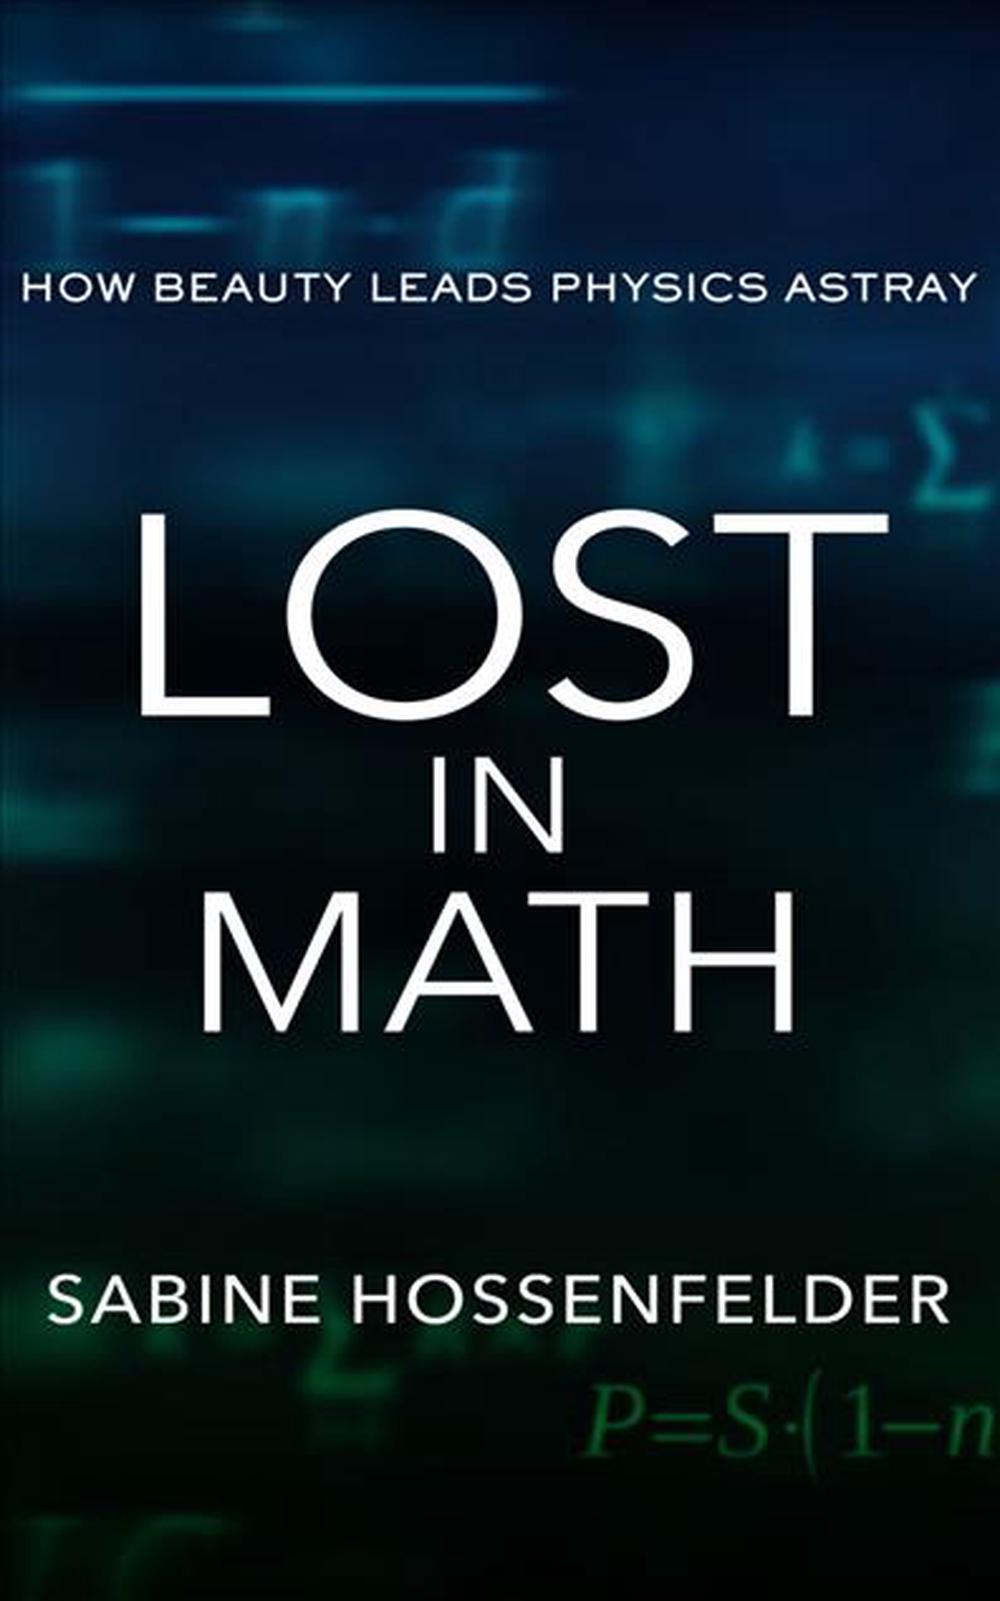 Lost in Math by Sabine Hossenfelder